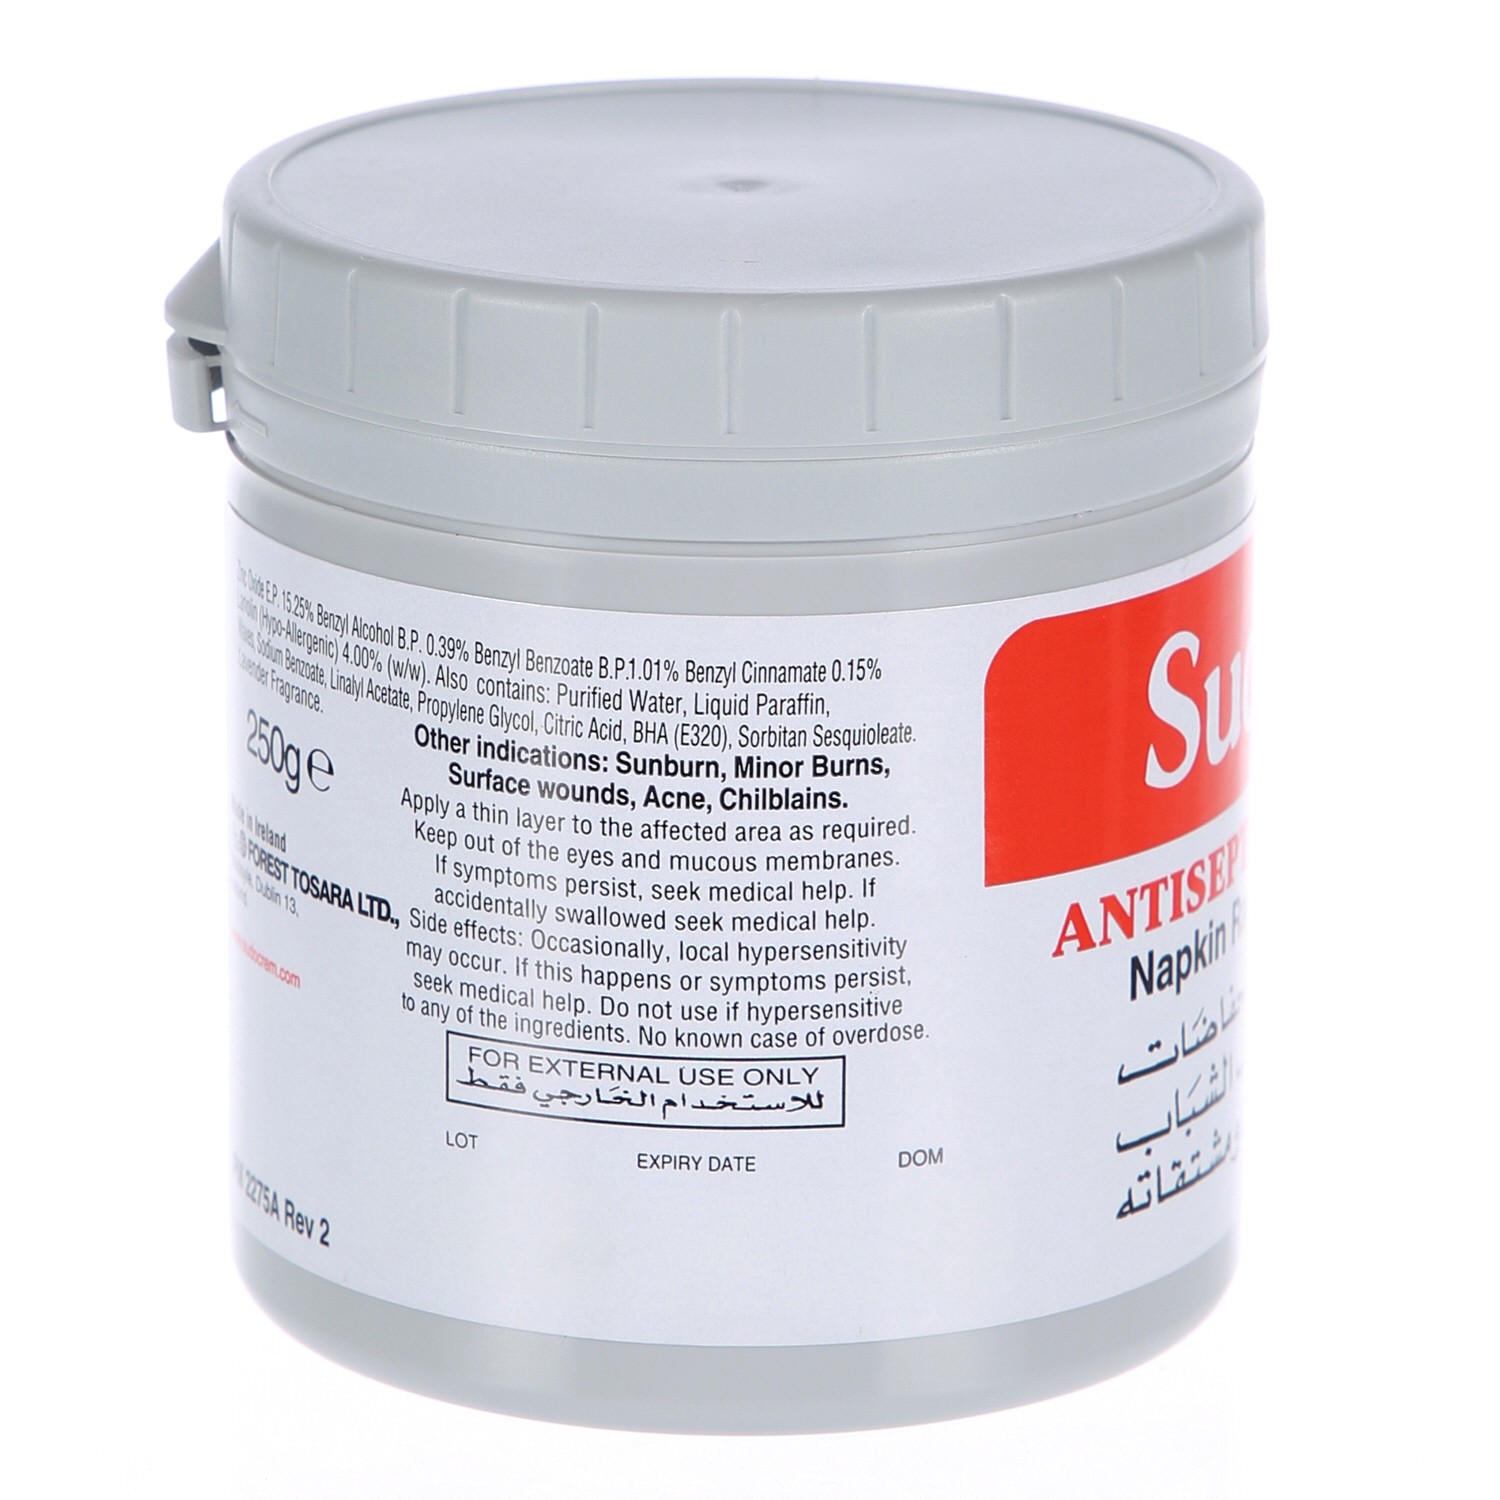 Sudocrem Antiseptic Cream 250gm